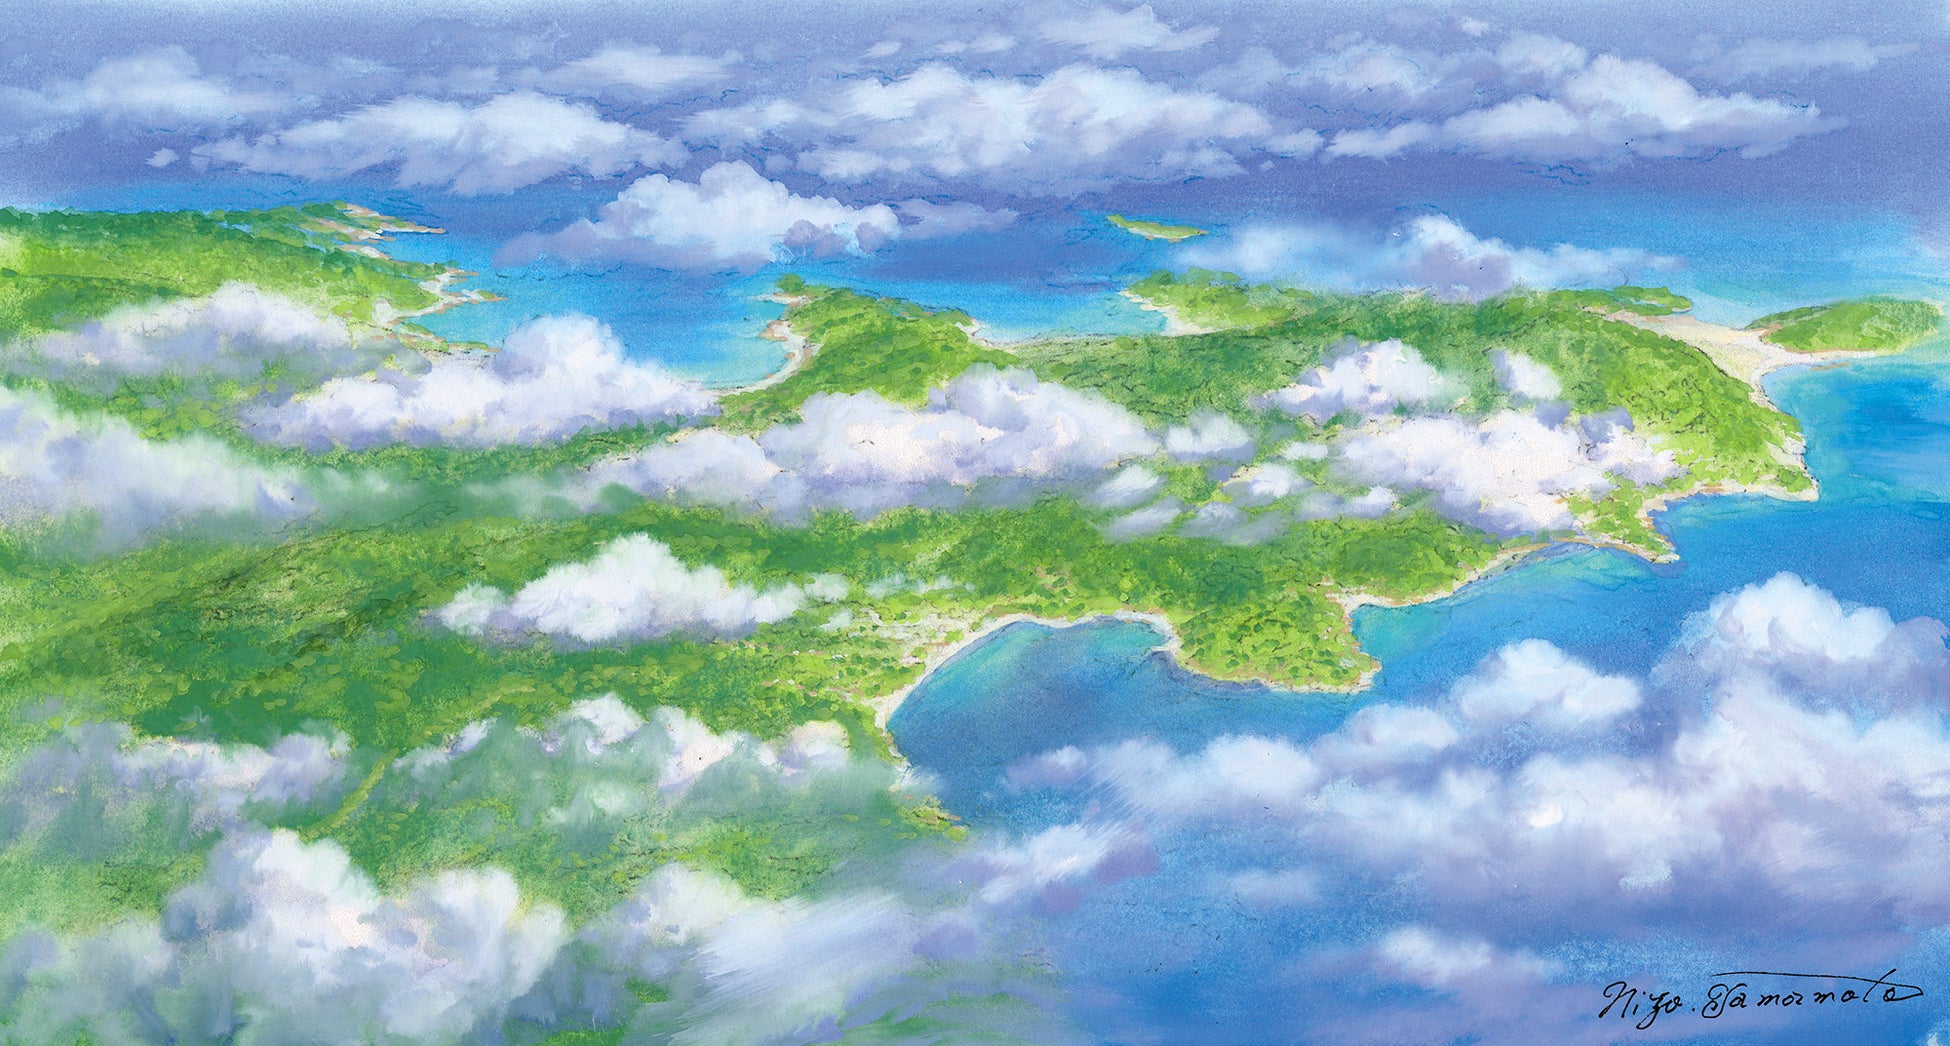 五島の魅力を実感「風薫る空の旅キャンペーン」の実施について